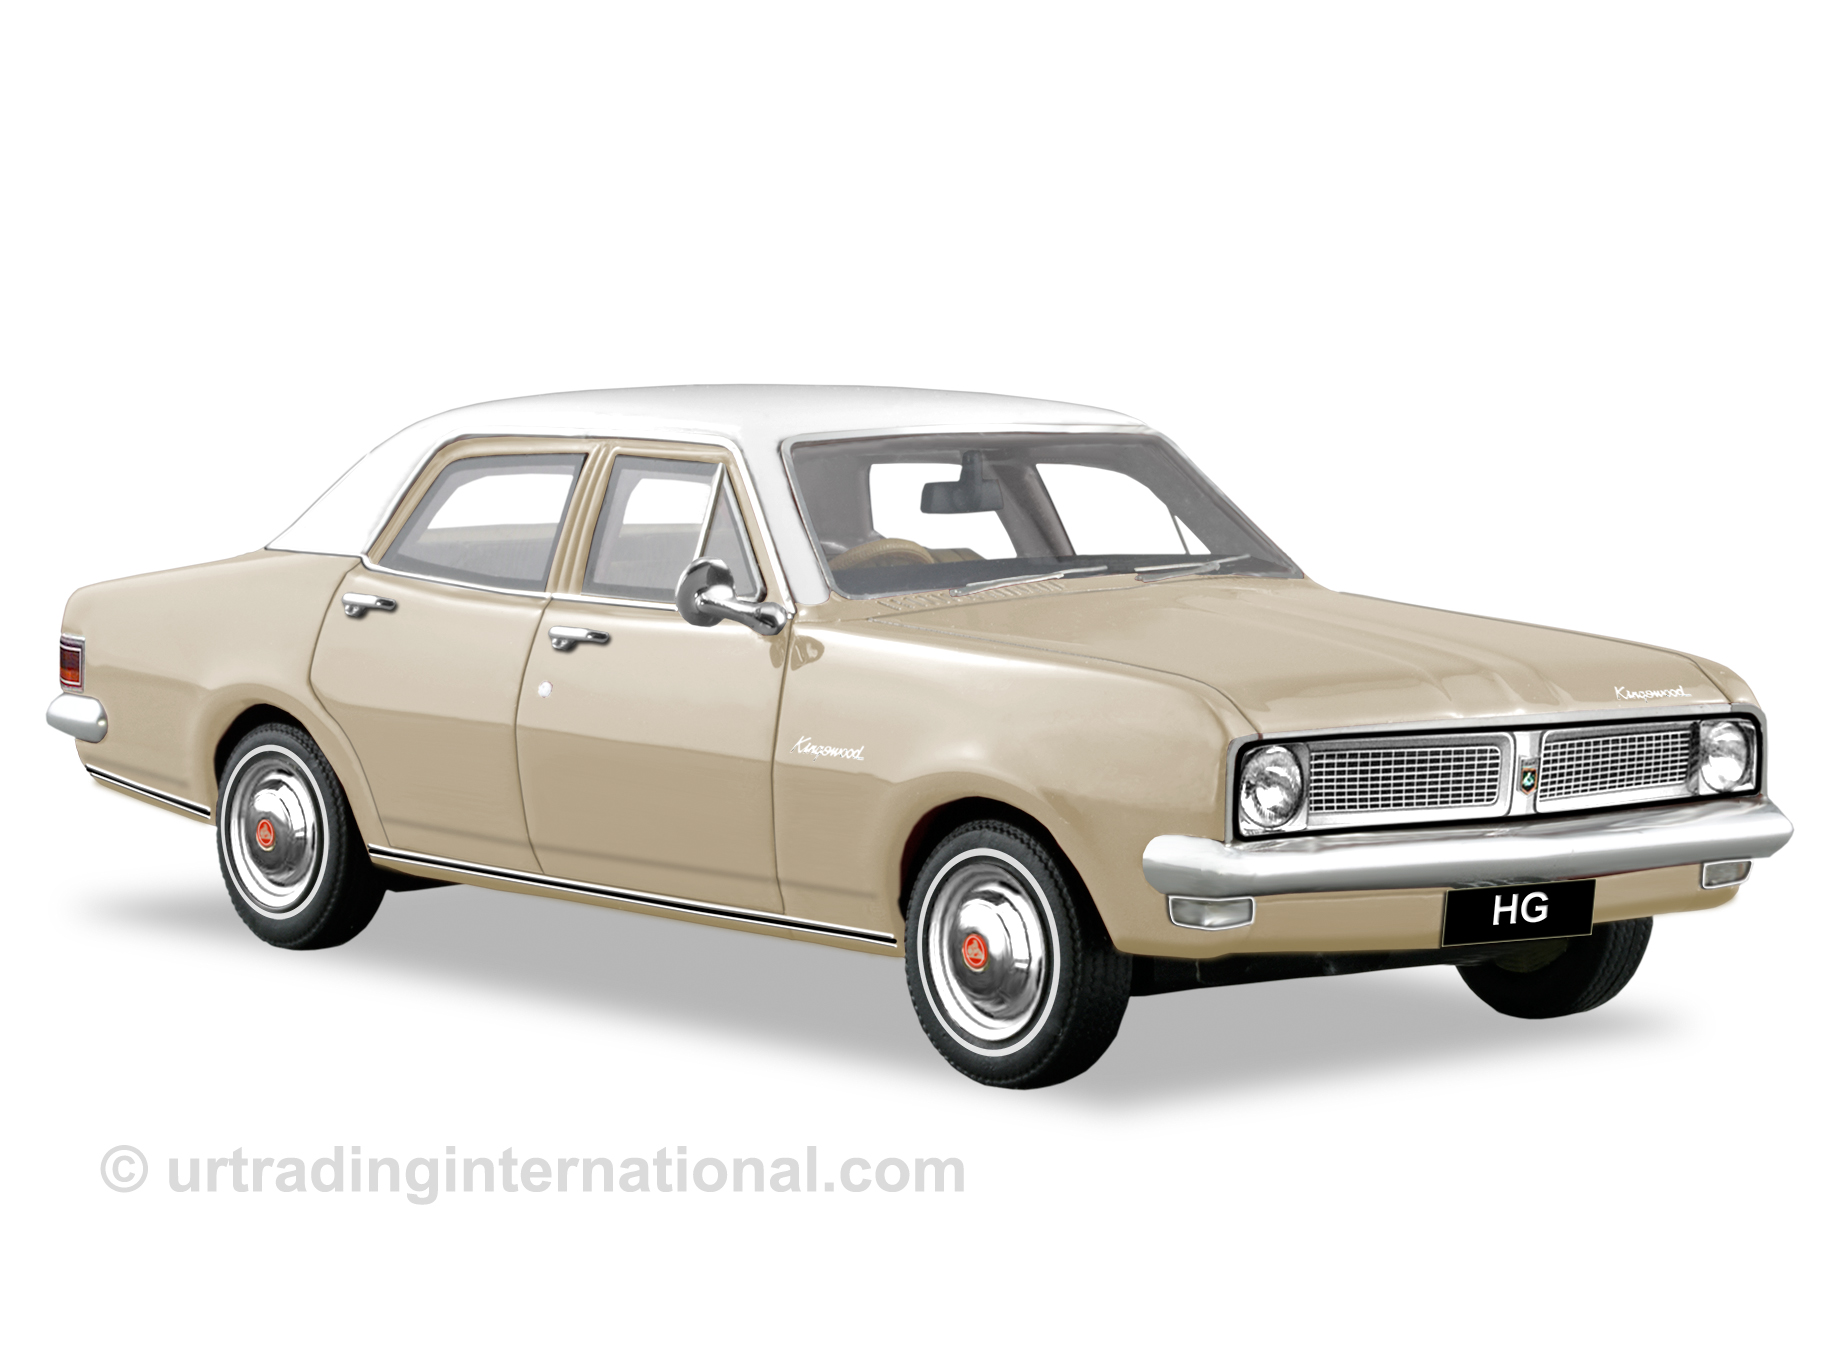 1970 HG Kingswood Sedan – Sundan Beige / White Roof